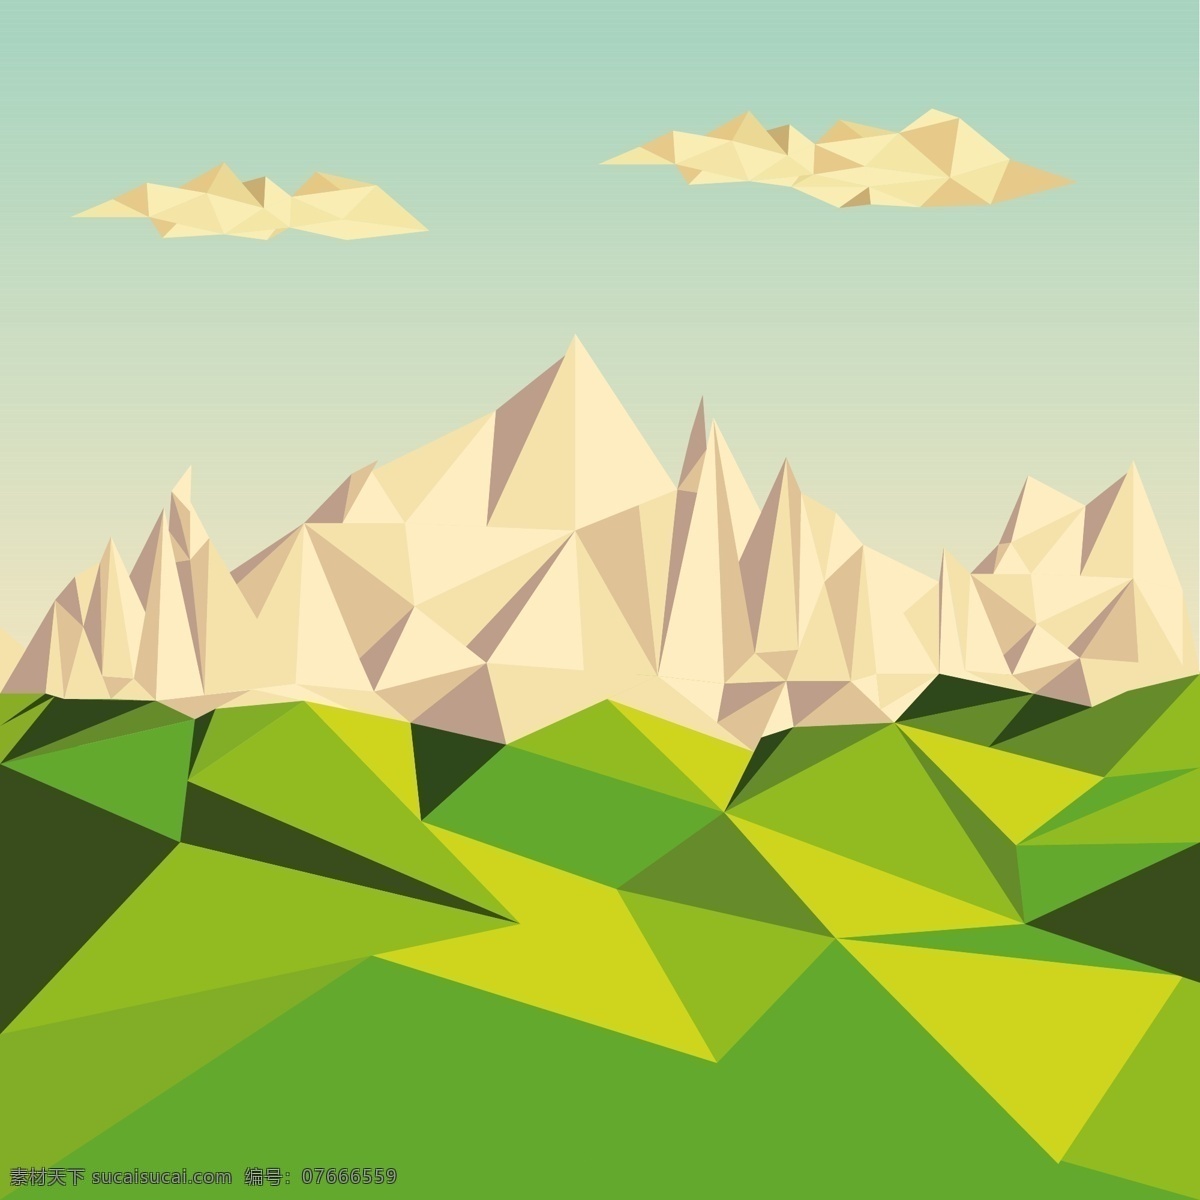 几何山脉设计 几何 山脉 晶格 唯美 简约 天空 山 几何图形 晶格化 阳光 春天 渐变 绿色